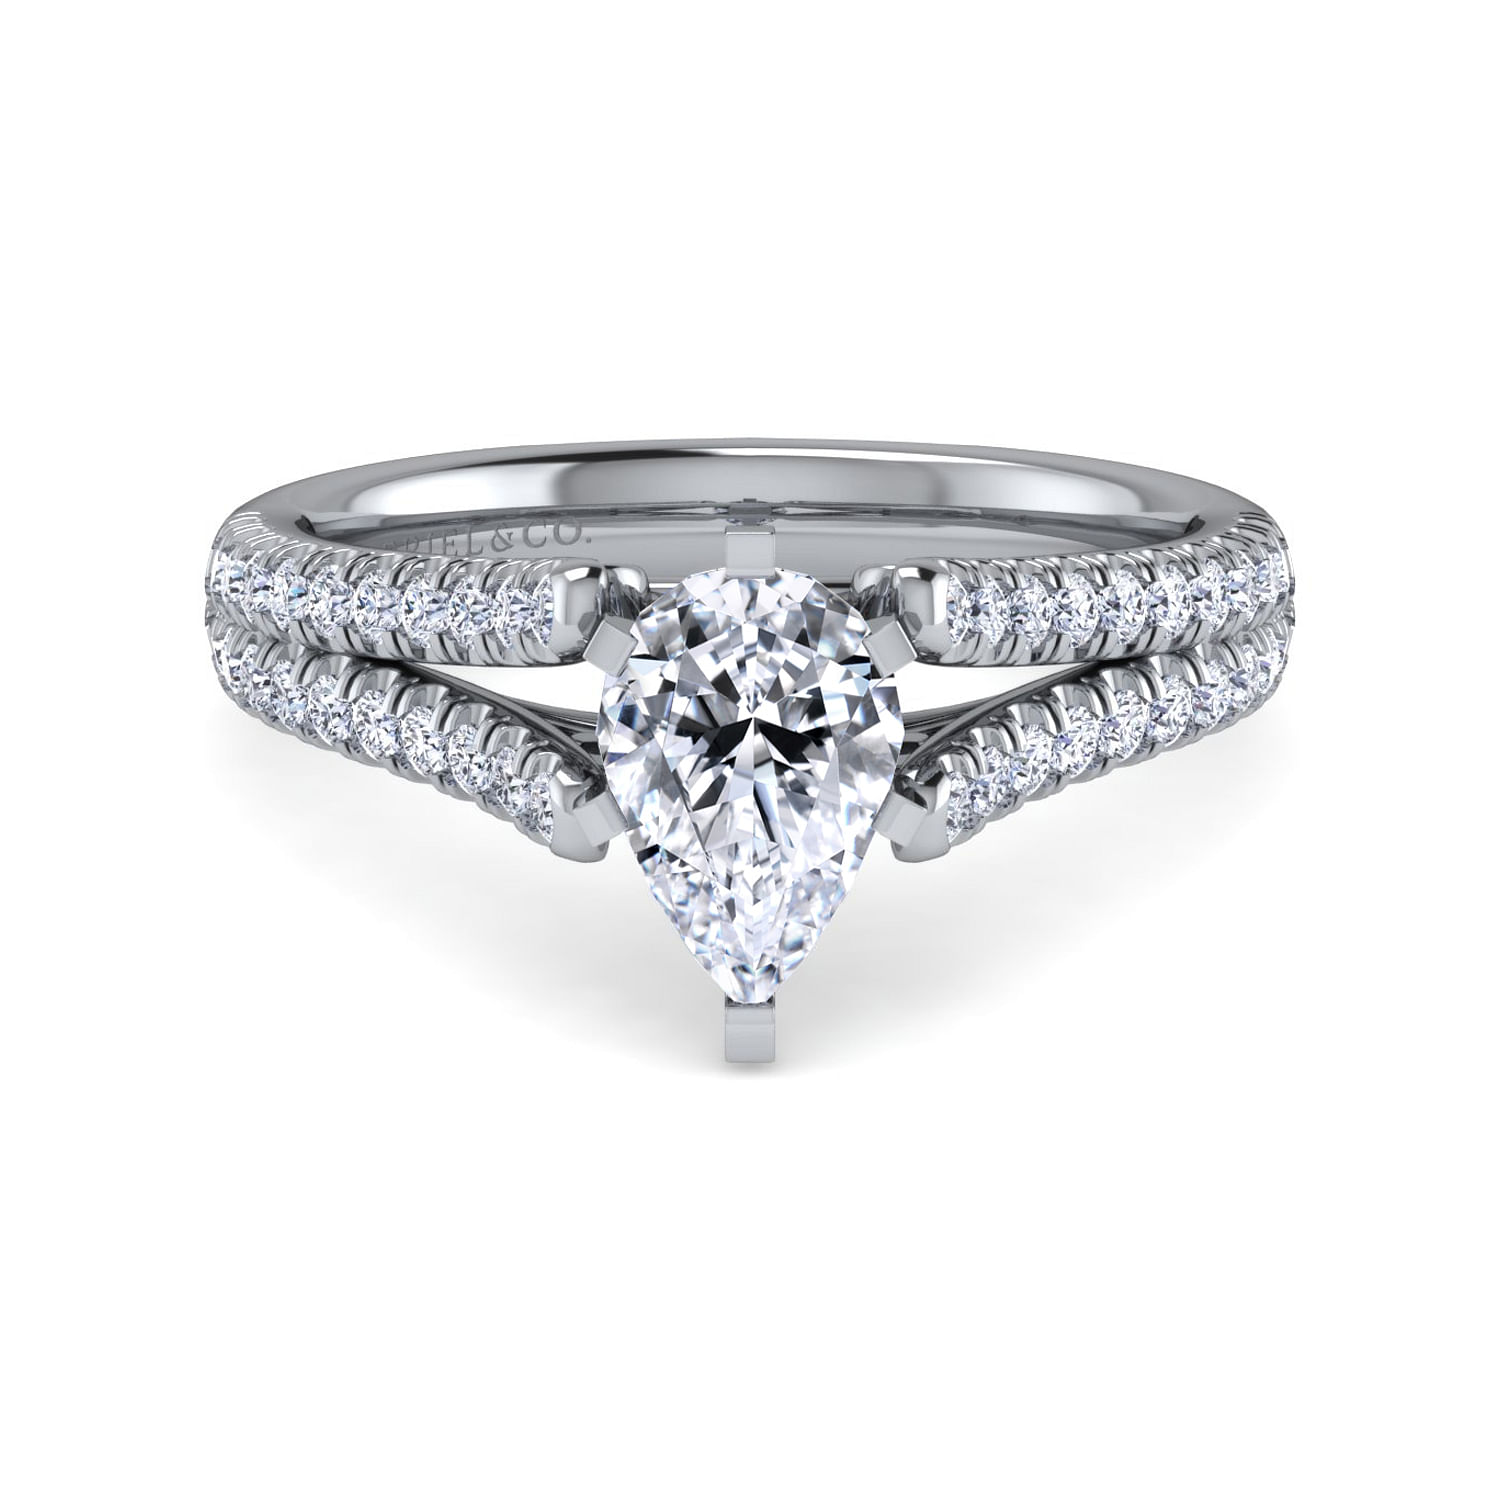 Janelle - 14K White Gold Pear Shape Diamond Engagement Ring